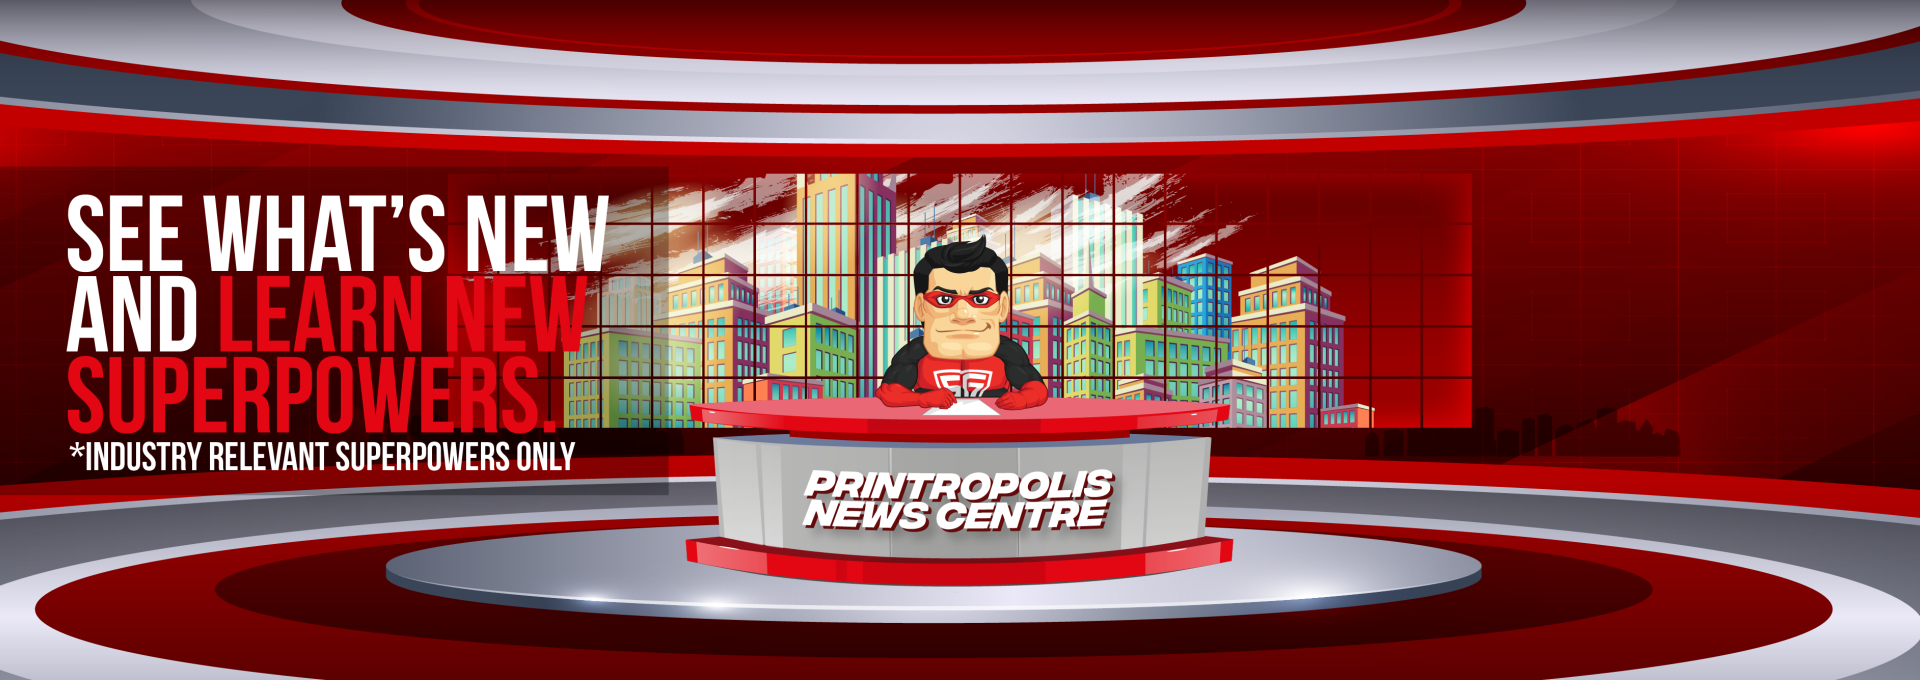 Printropolis News Centre New